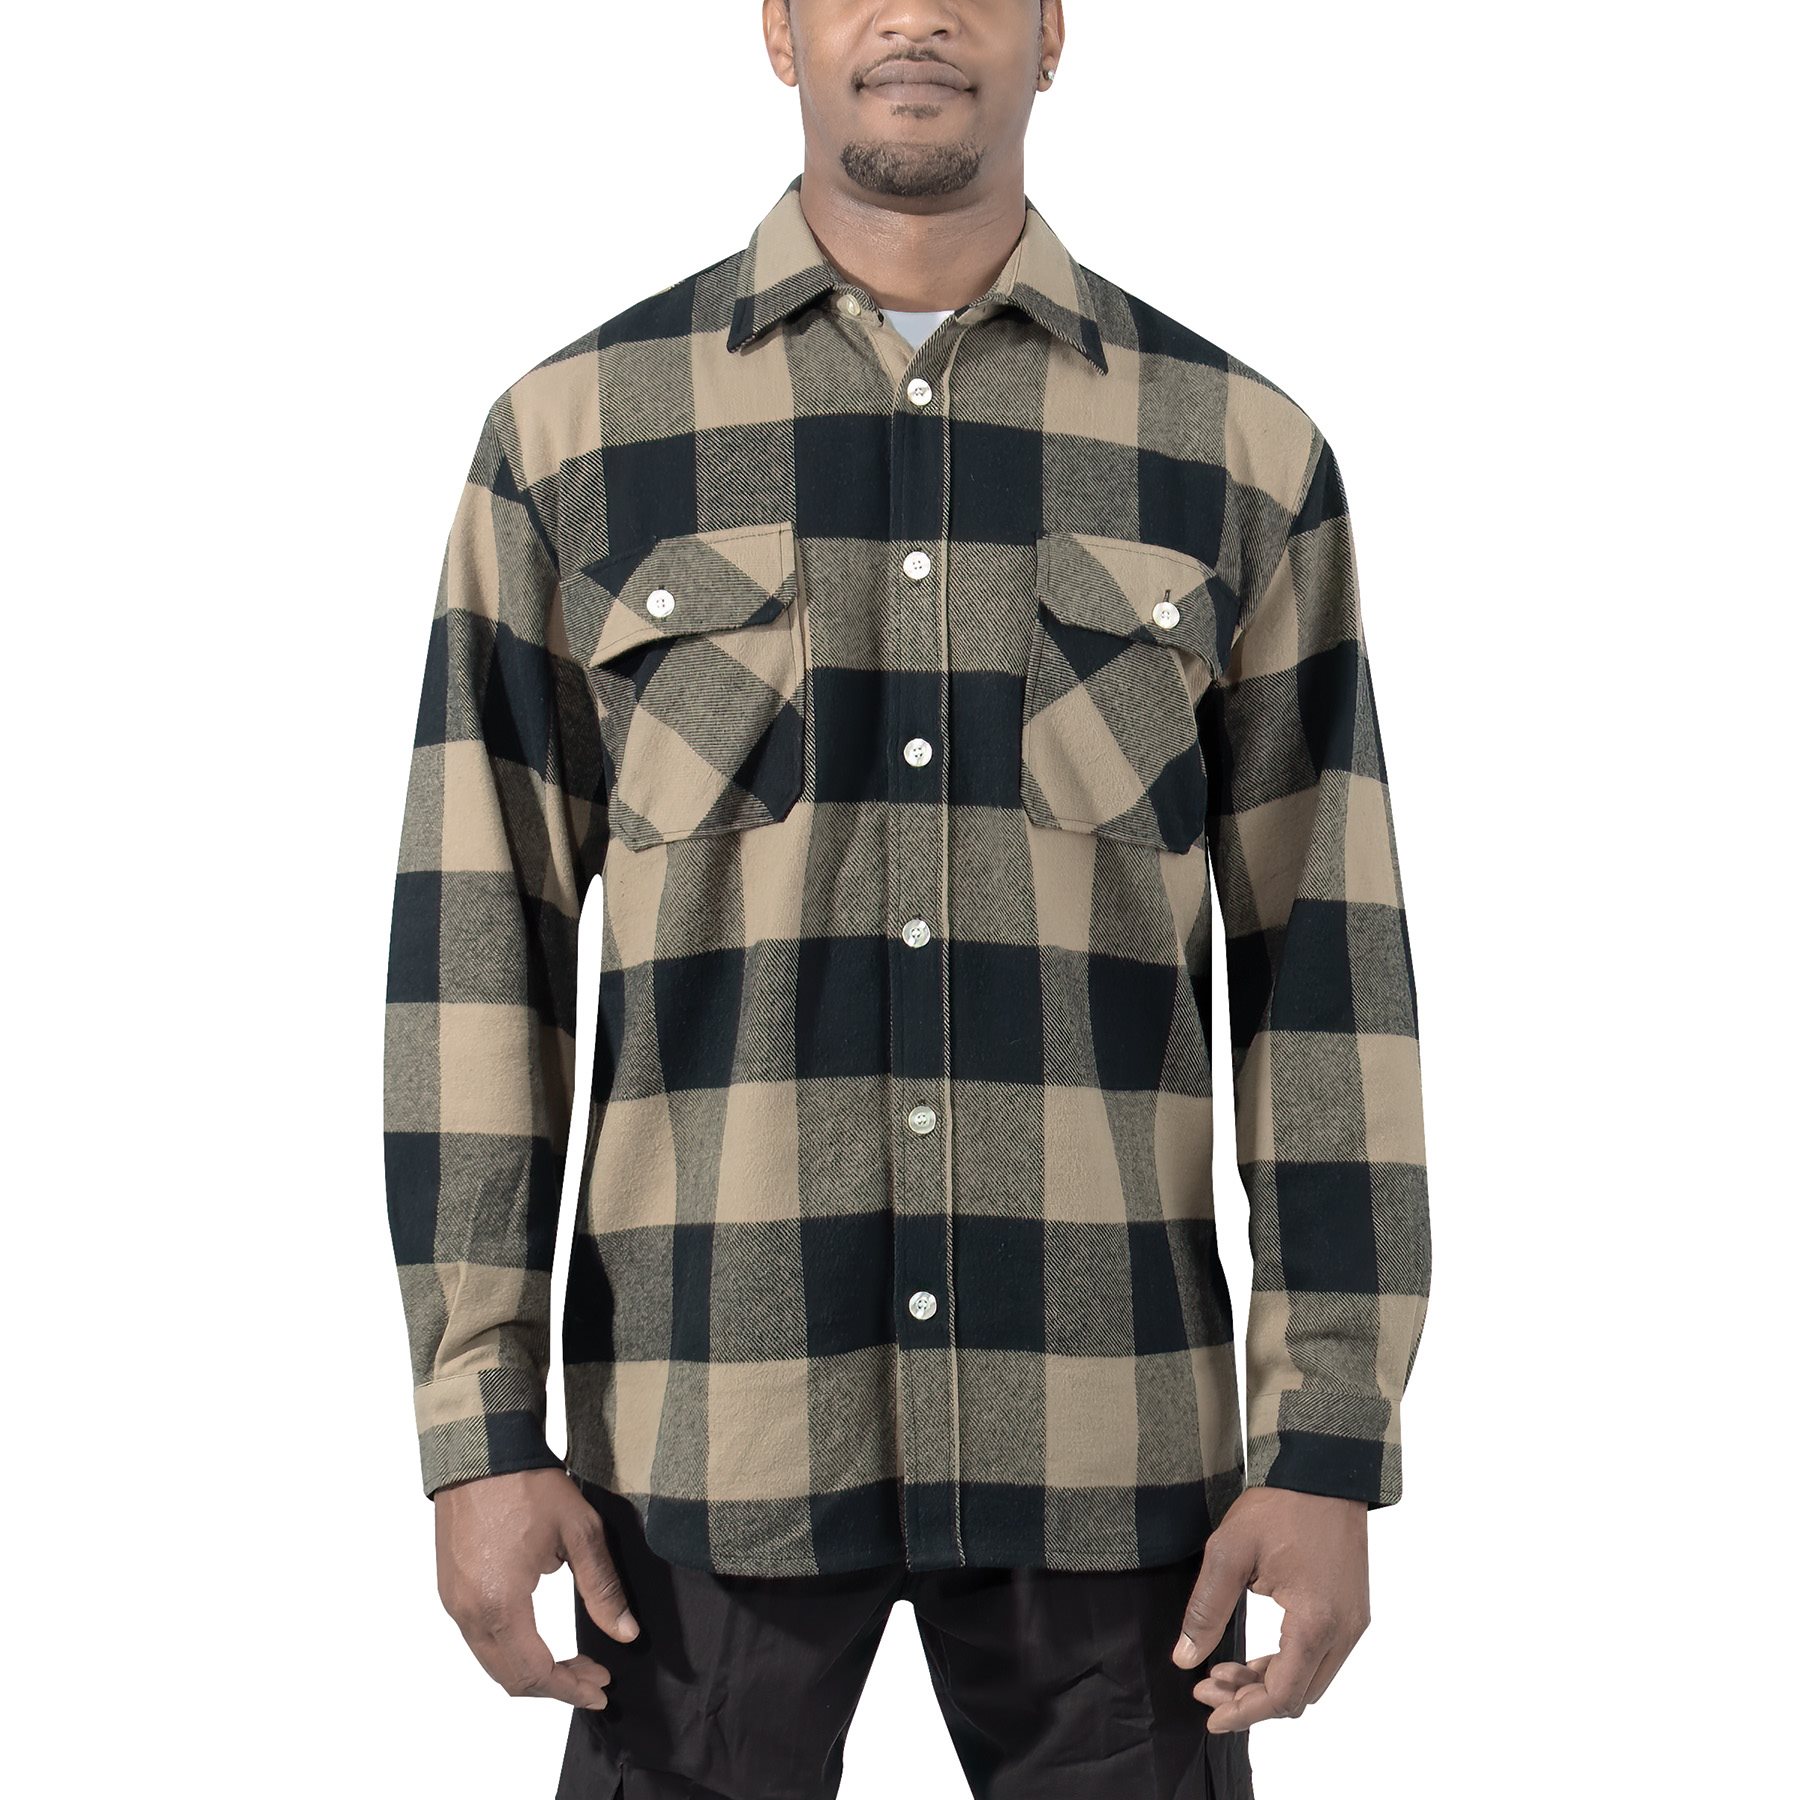 Lumberjack plaid shirt FLANNEL COYOTE BROWN ROTHCO 47380 L-11